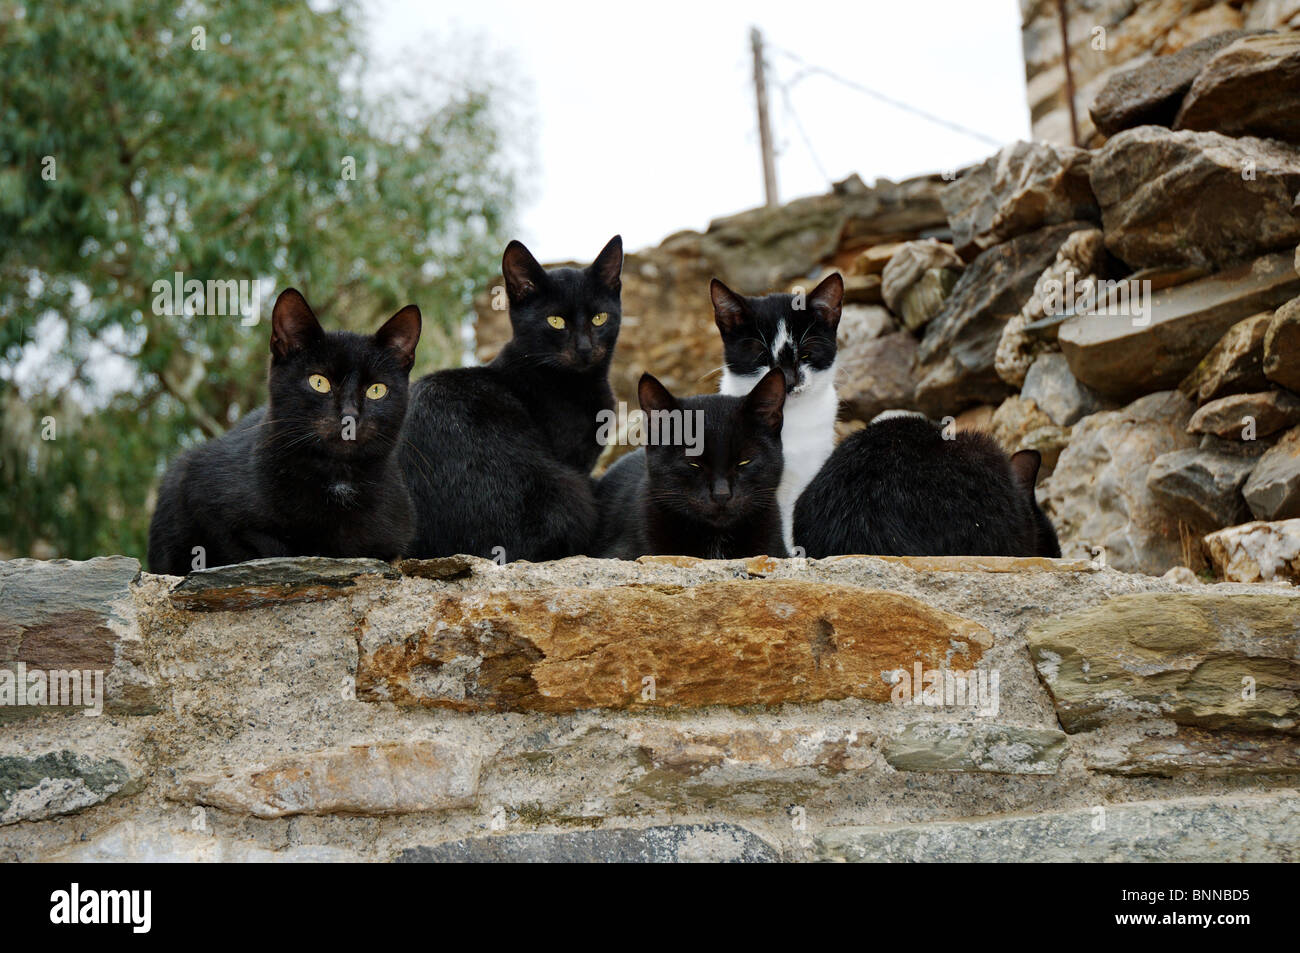 Katze Katzen Säugetier Säugetiere Haustier Haustiere Katzenfamilie griechische Katzen Gesamtansicht Griechenland griechisch Stock Photo